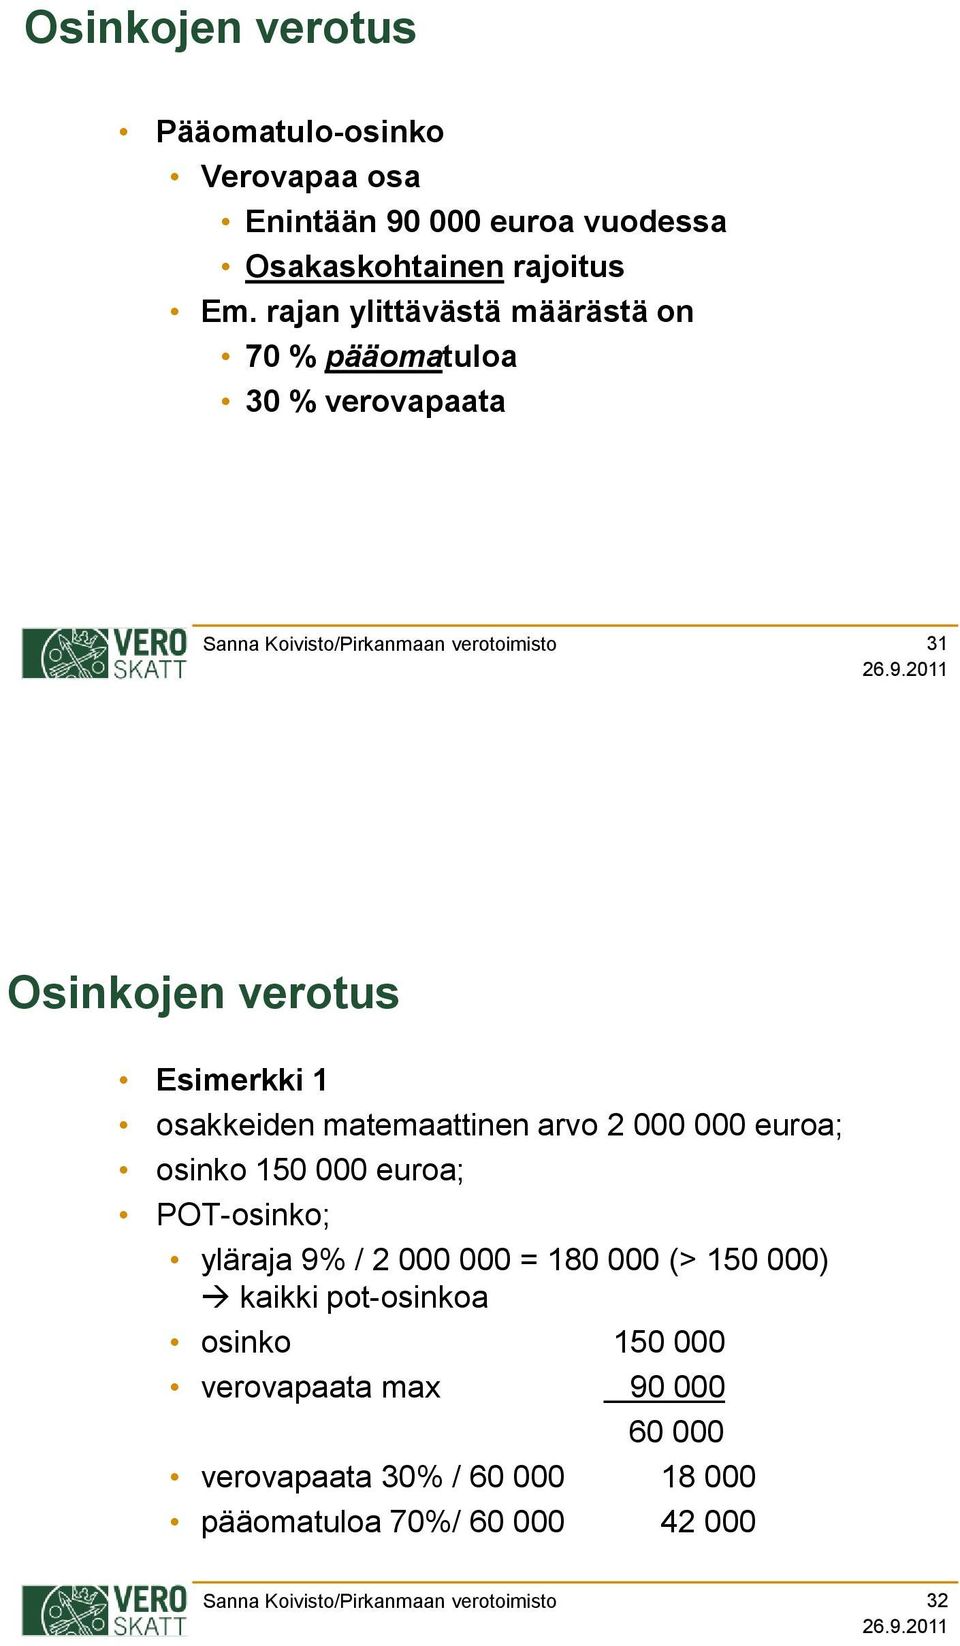 matemaattinen arvo 2 000 000 euroa; osinko 150 000 euroa; POT-osinko; yläraja 9% / 2 000 000 = 180 000 (> 150 000)